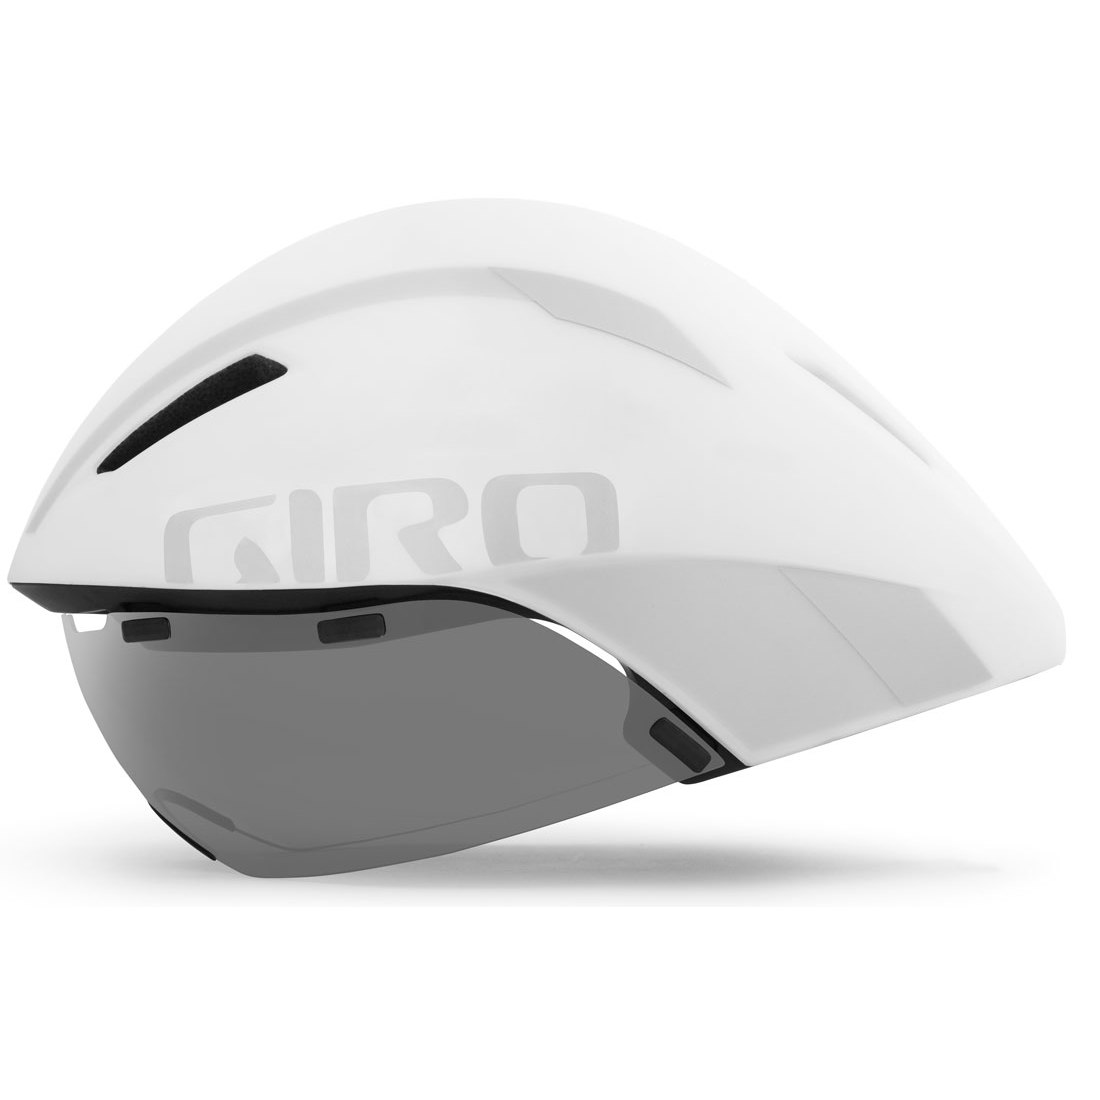 Produktbild von Giro Aerohead MIPS Helm - matte white / silver